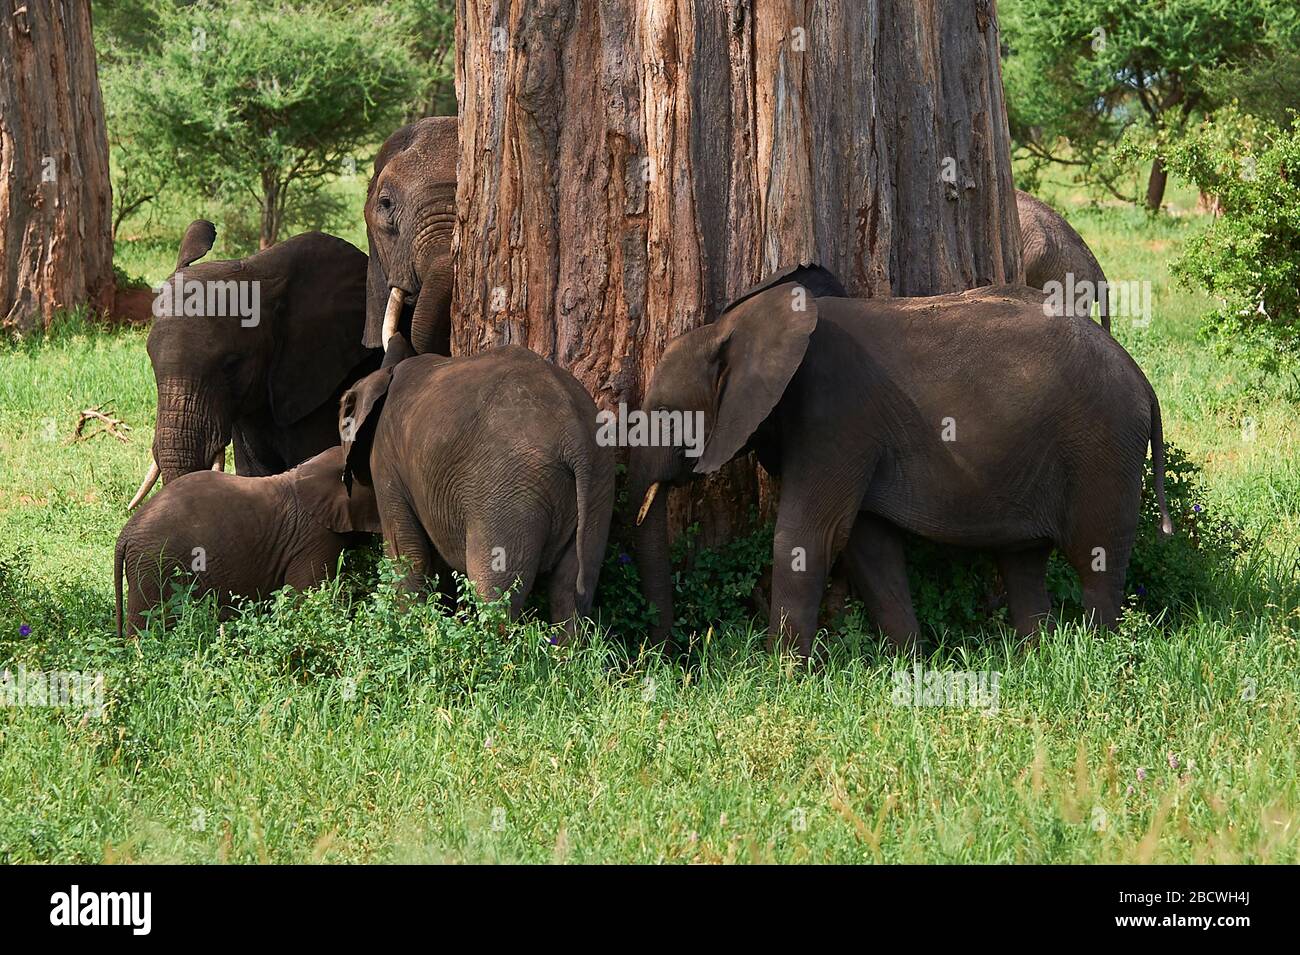 Un grand arbre Baobab fait un joli carrousel d'éléphants Banque D'Images